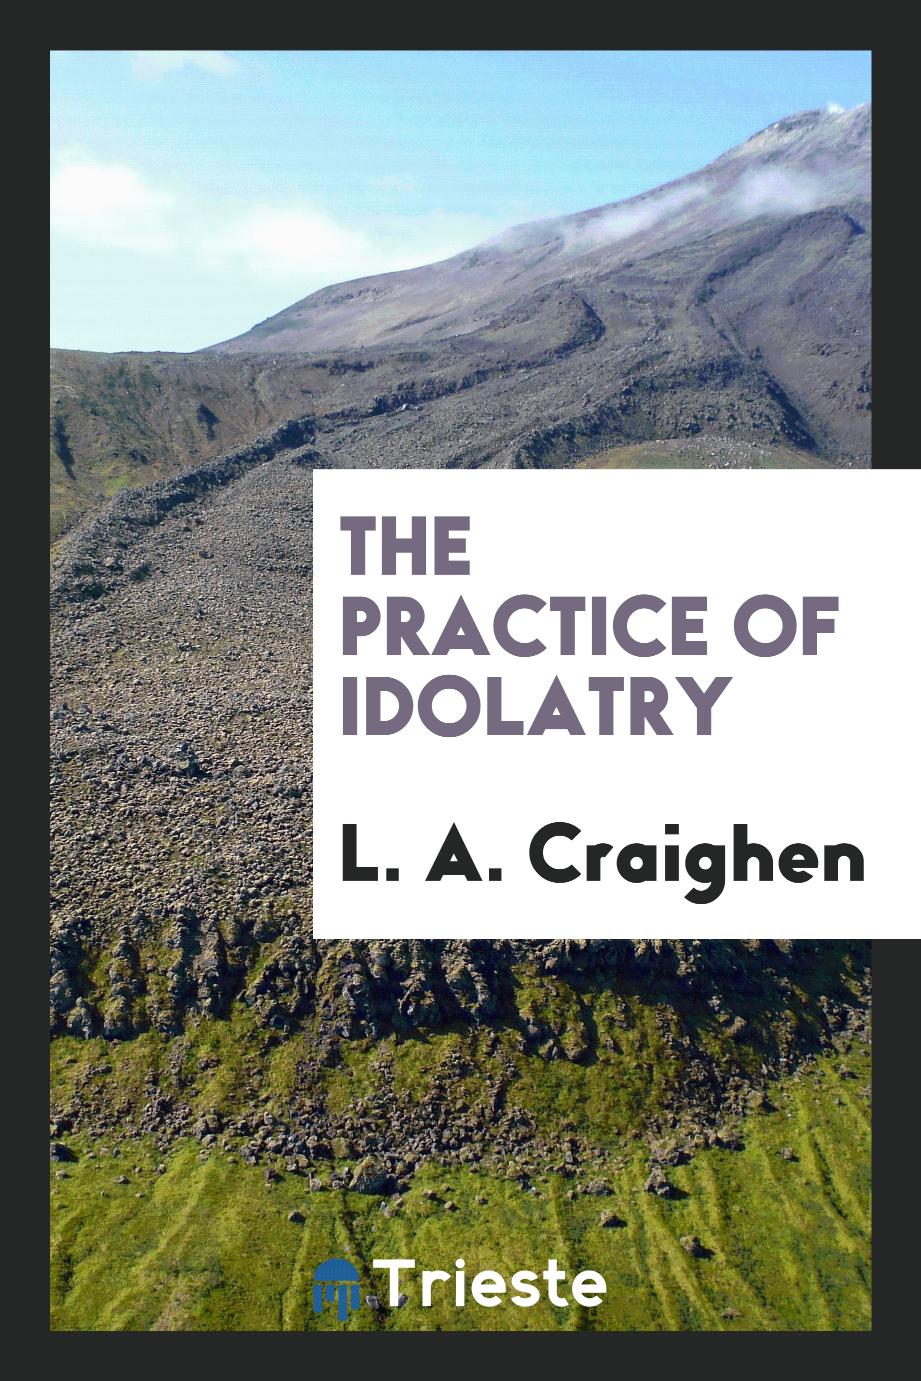 The practice of idolatry